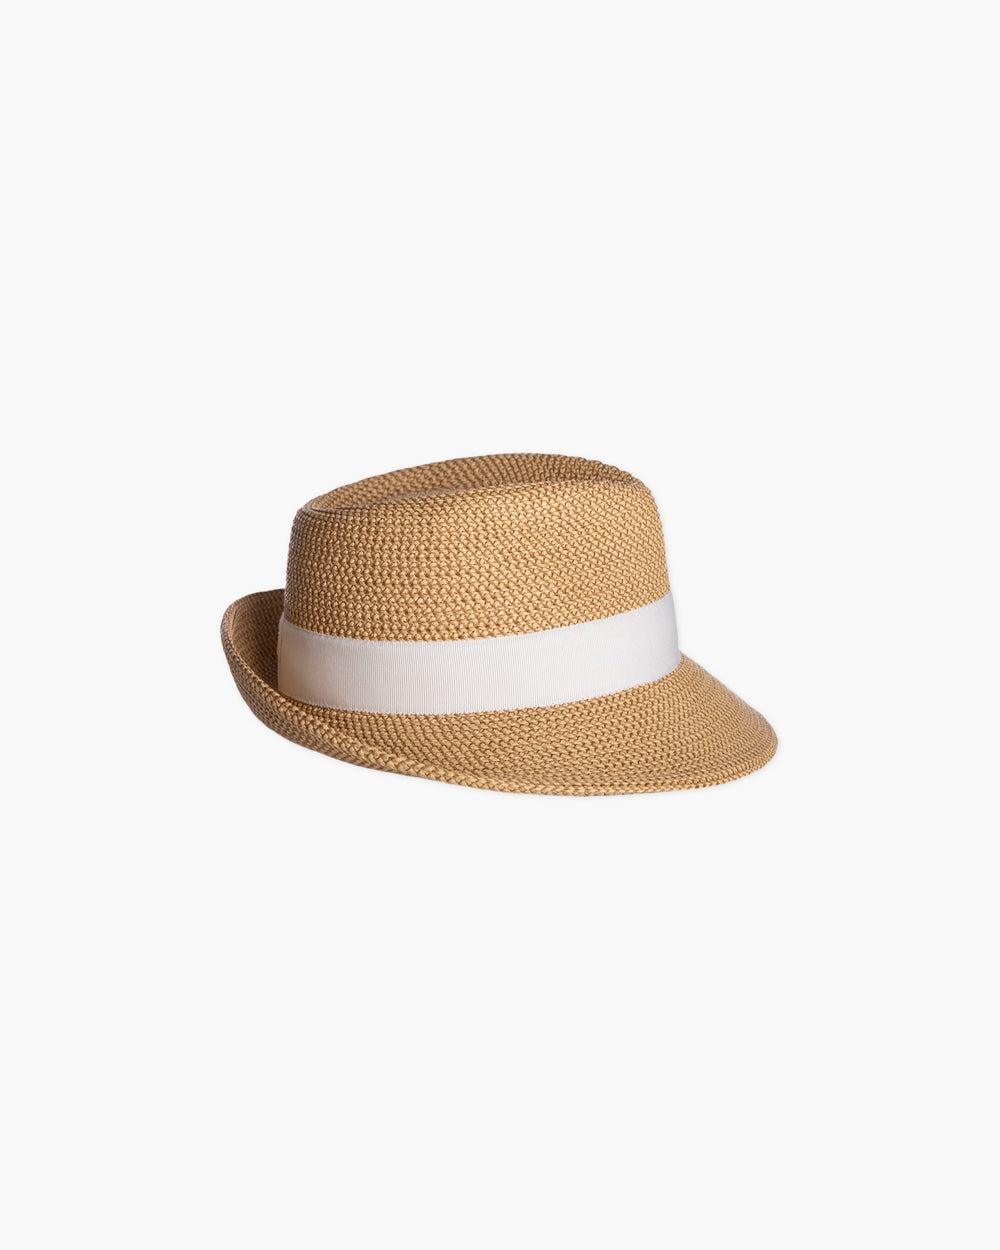 Mr. Squishee® Classic Fedora Hat | Men Designer's Hat | Eric Javits ...